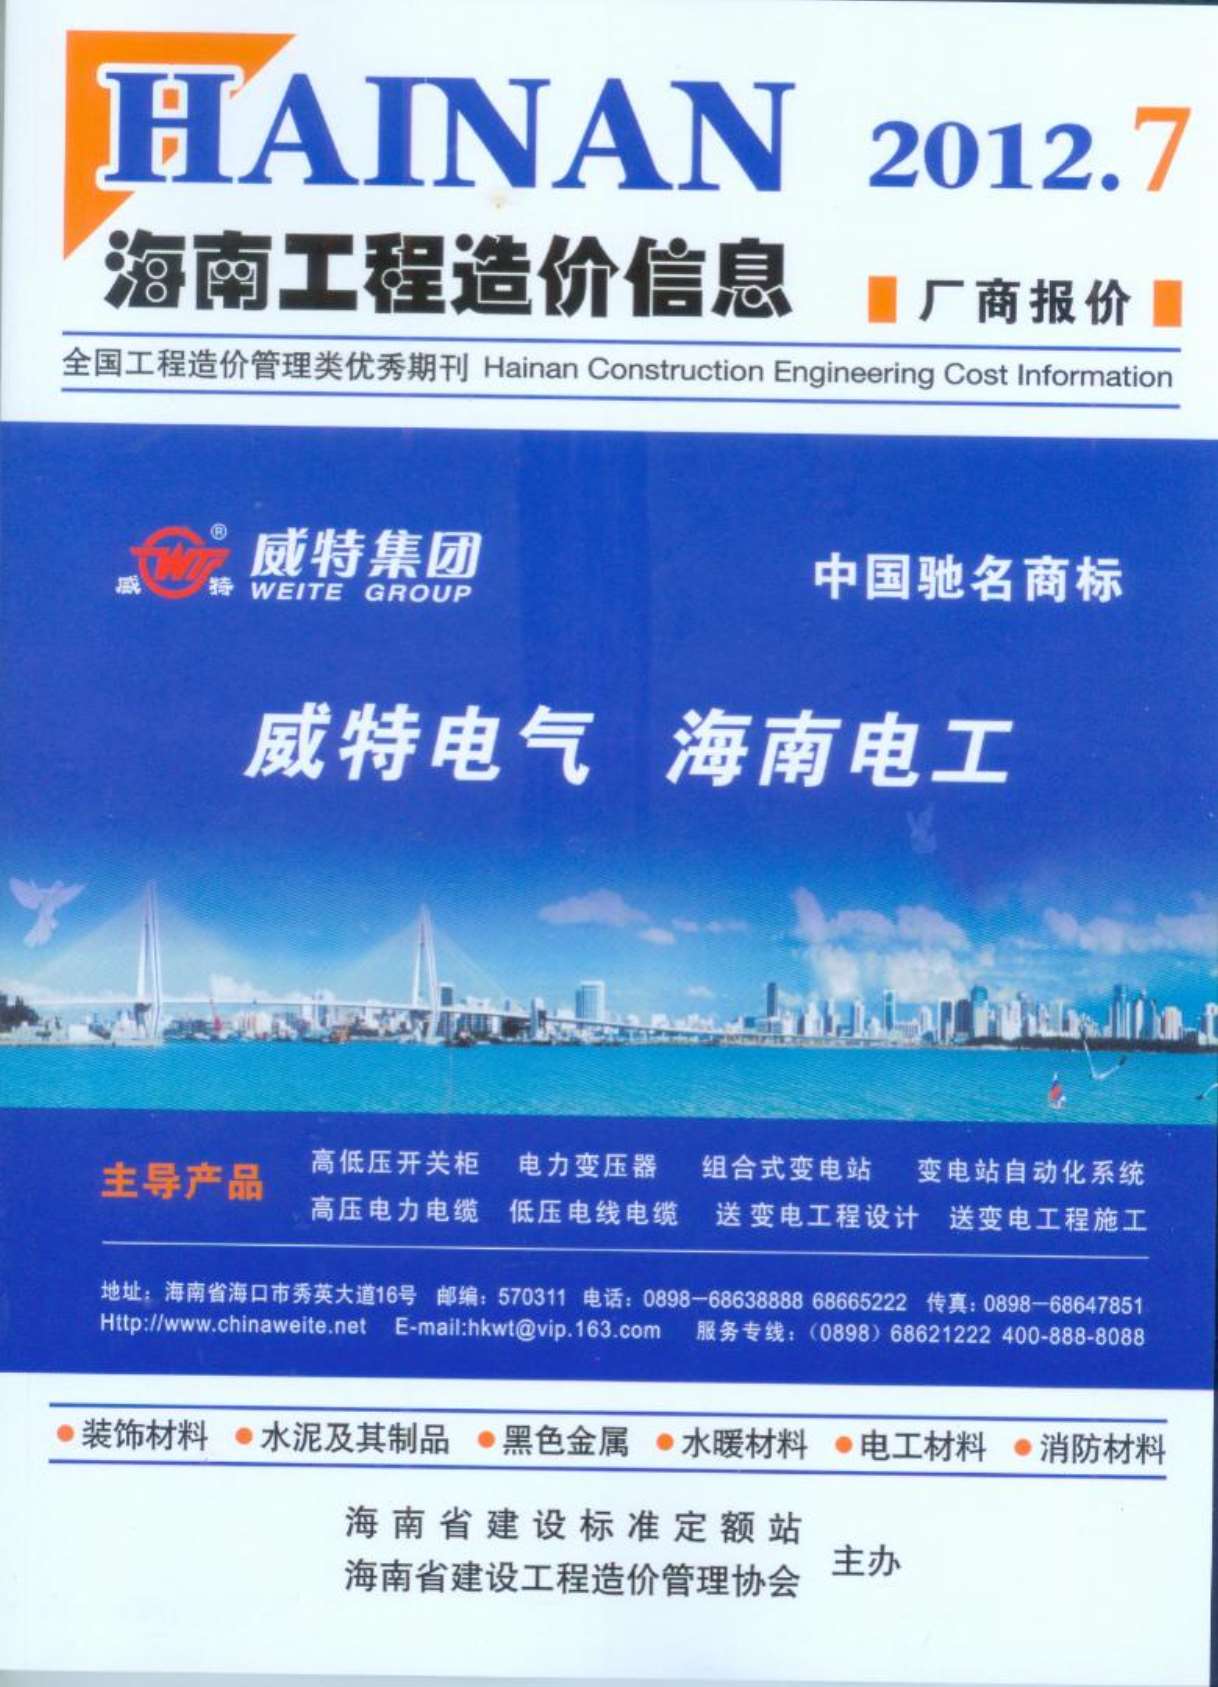 海南省2012年7月工程建材价